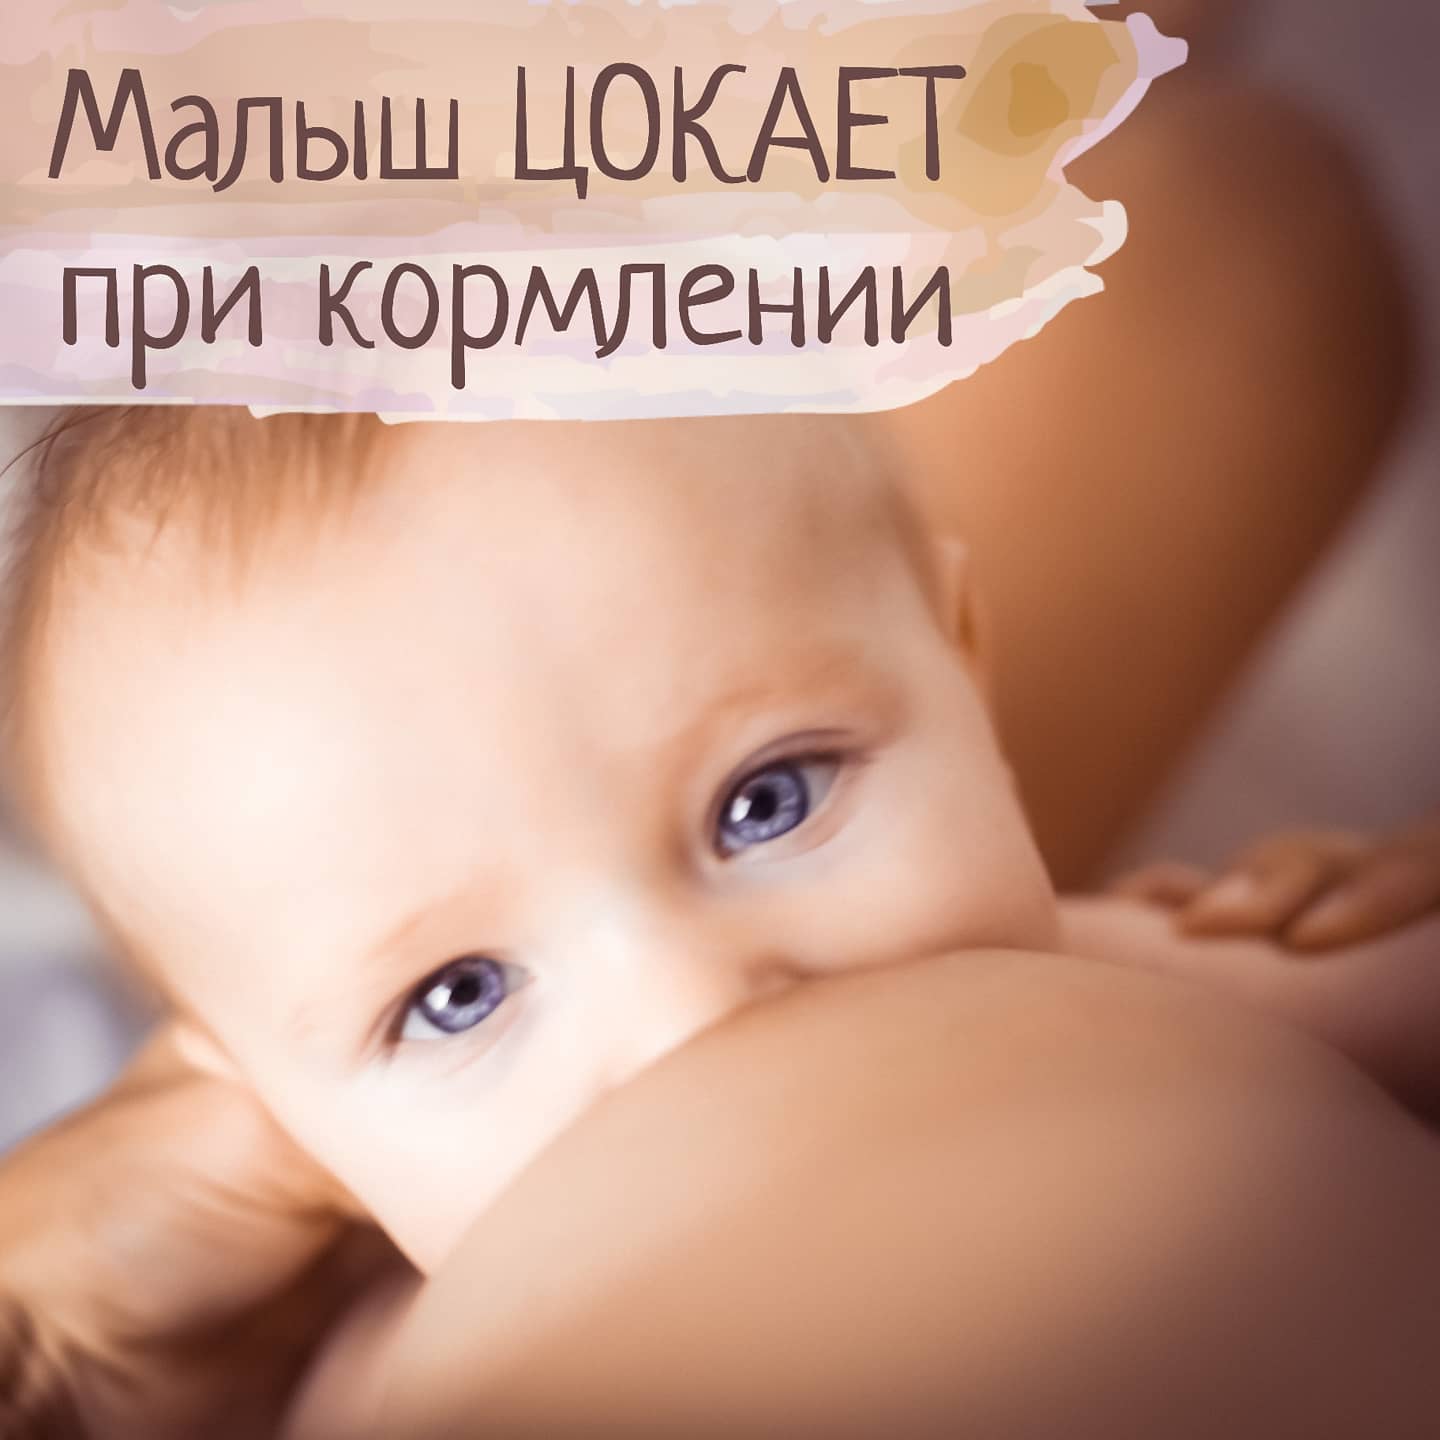 Ребенок цокает во время кормления — МедВопрос и консультация врача на форуме